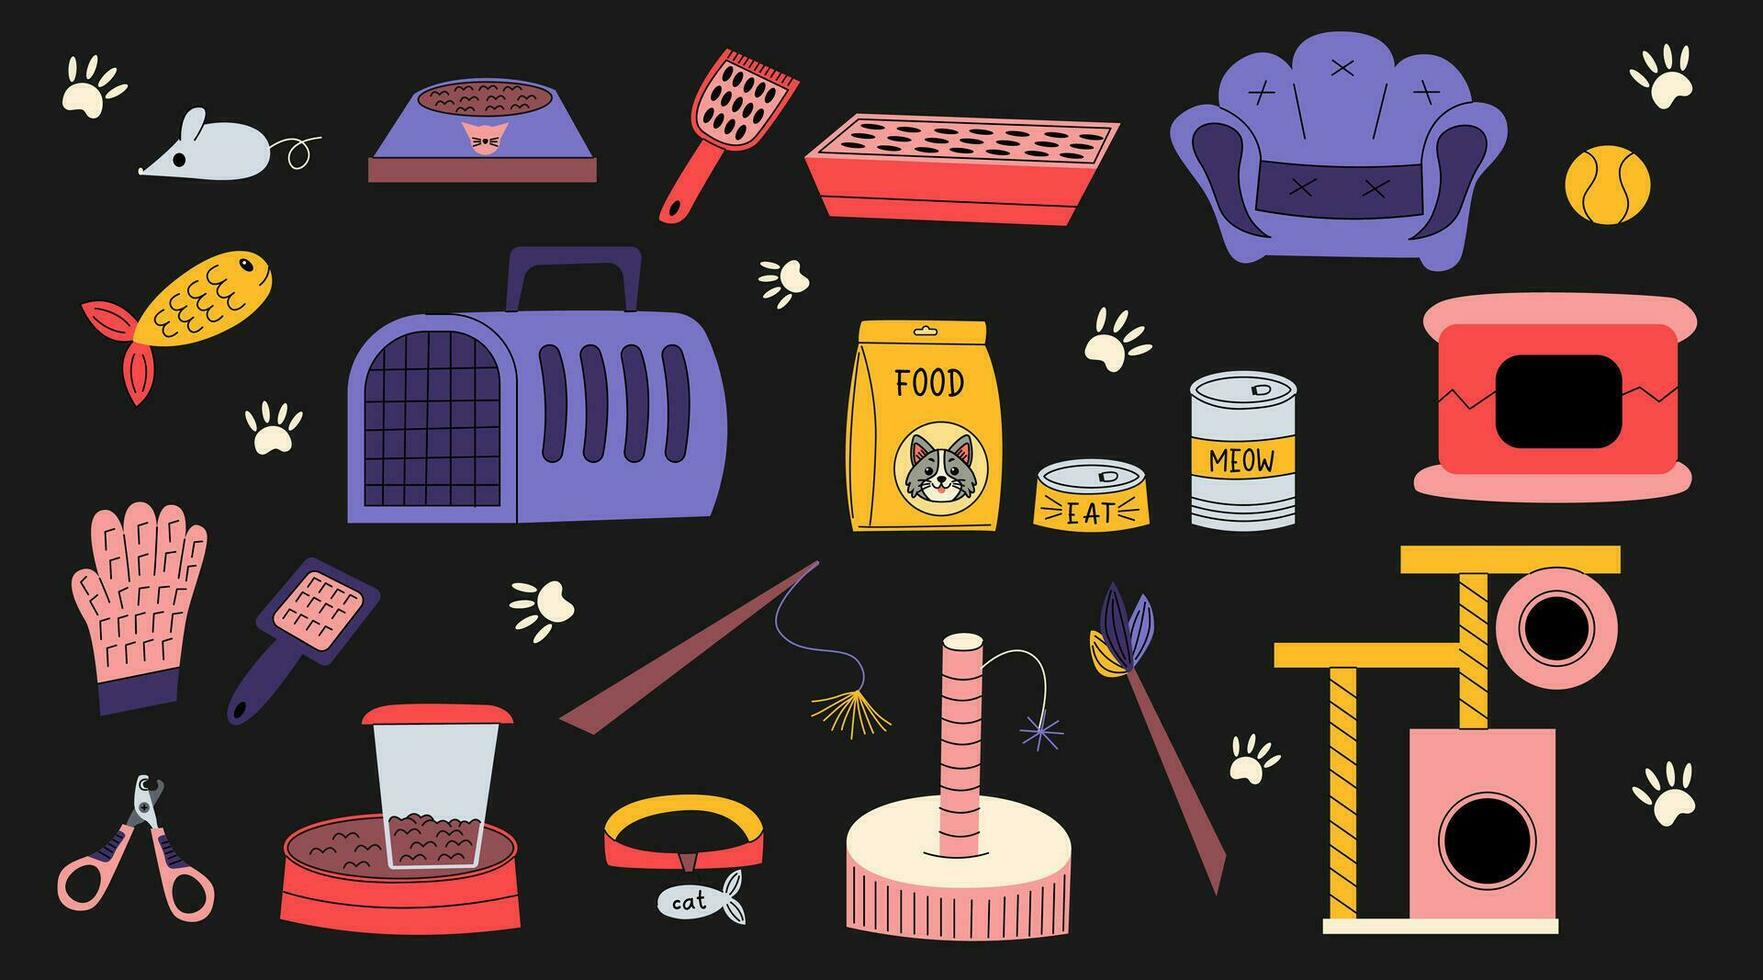 tekenfilm vlak stickers, accessoires en uitrusting voor katten. voedsel, speelgoed, kammen, halsband, vis, muis, kommen, bed. concept voor een huisdier winkel. hand getekend kleurrijk pictogrammen. vector